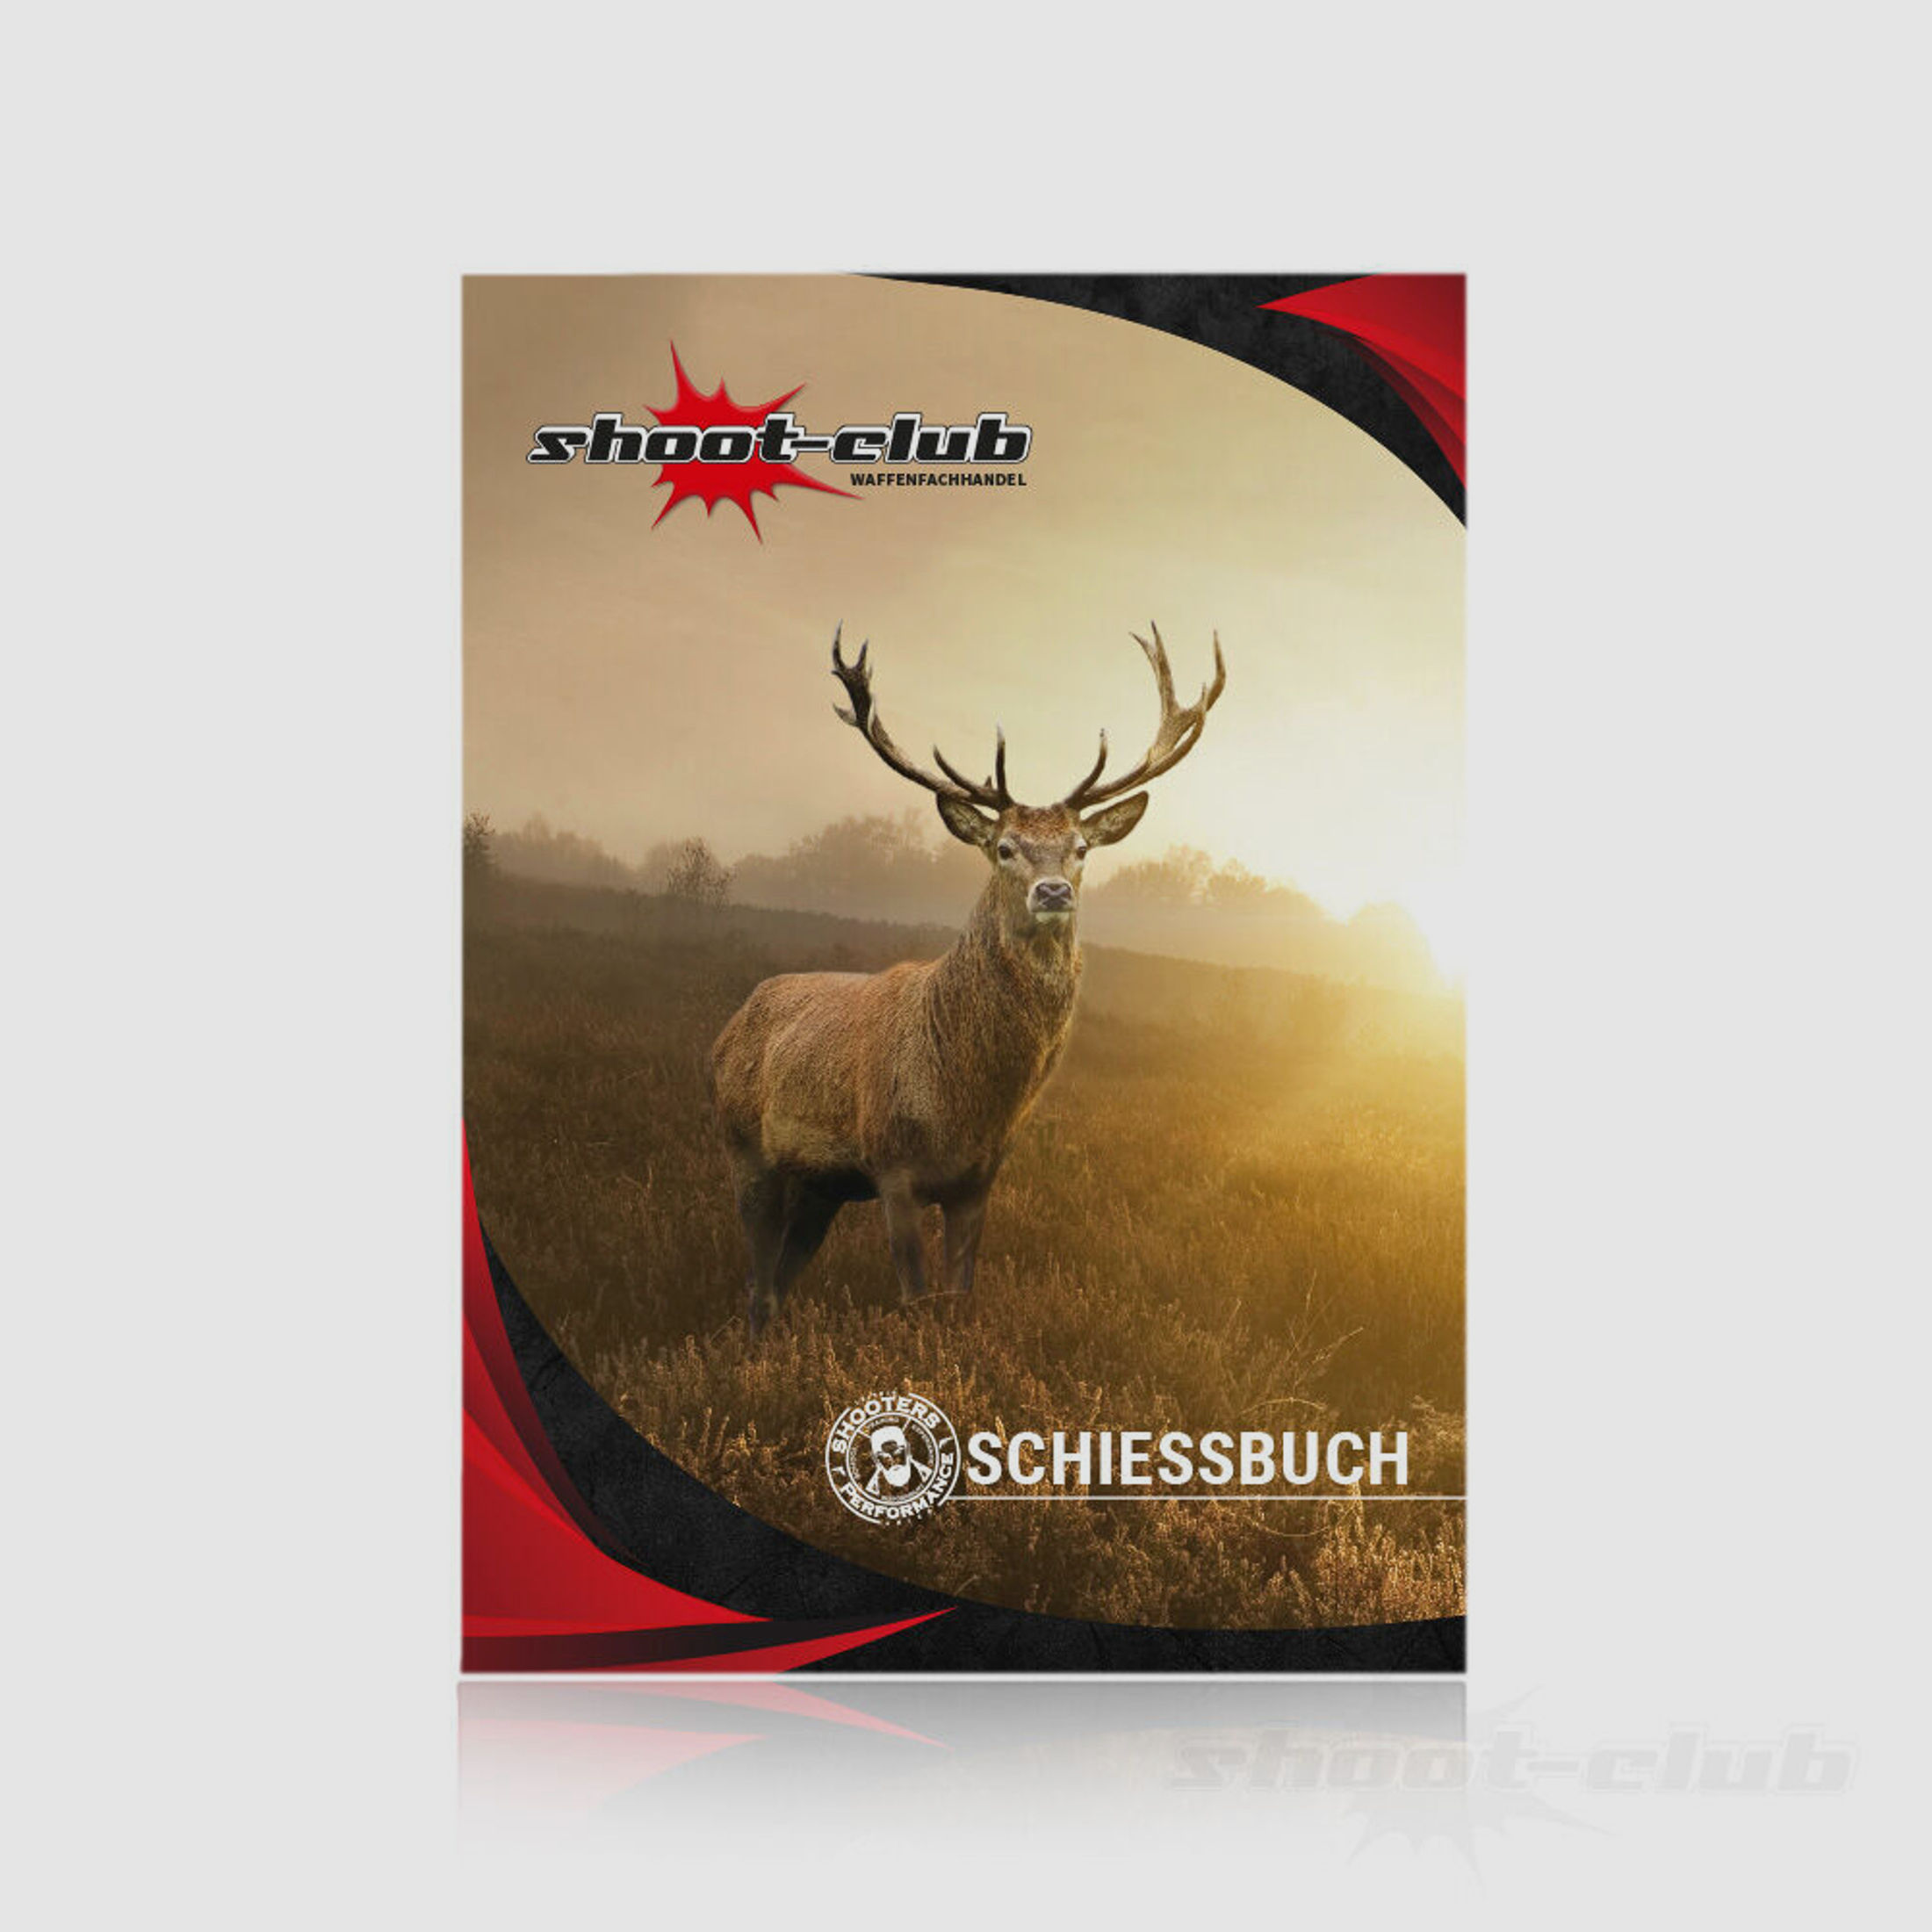 shoot-club Schießbuch als Behördennachweis DIN A6 36 Seiten